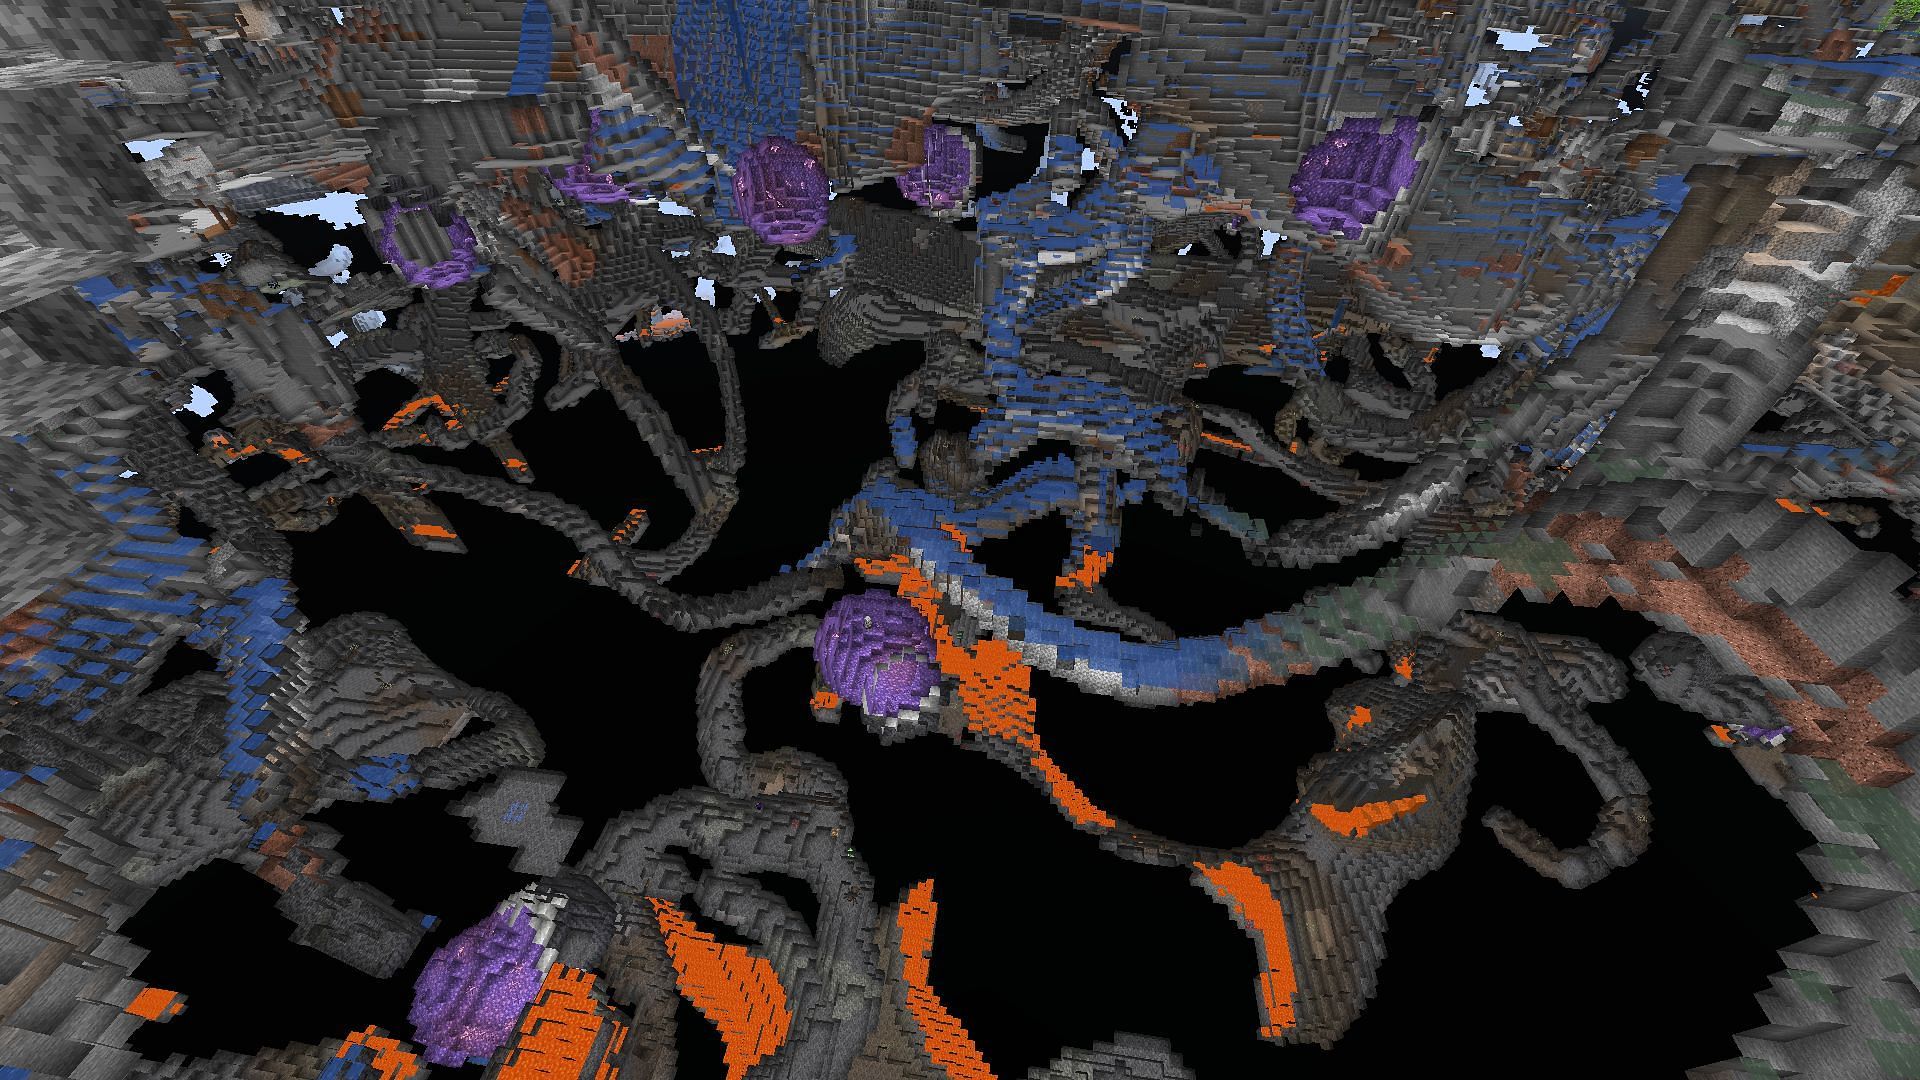 An underground view of the many geodes found under spawn (Image via Minecraft)